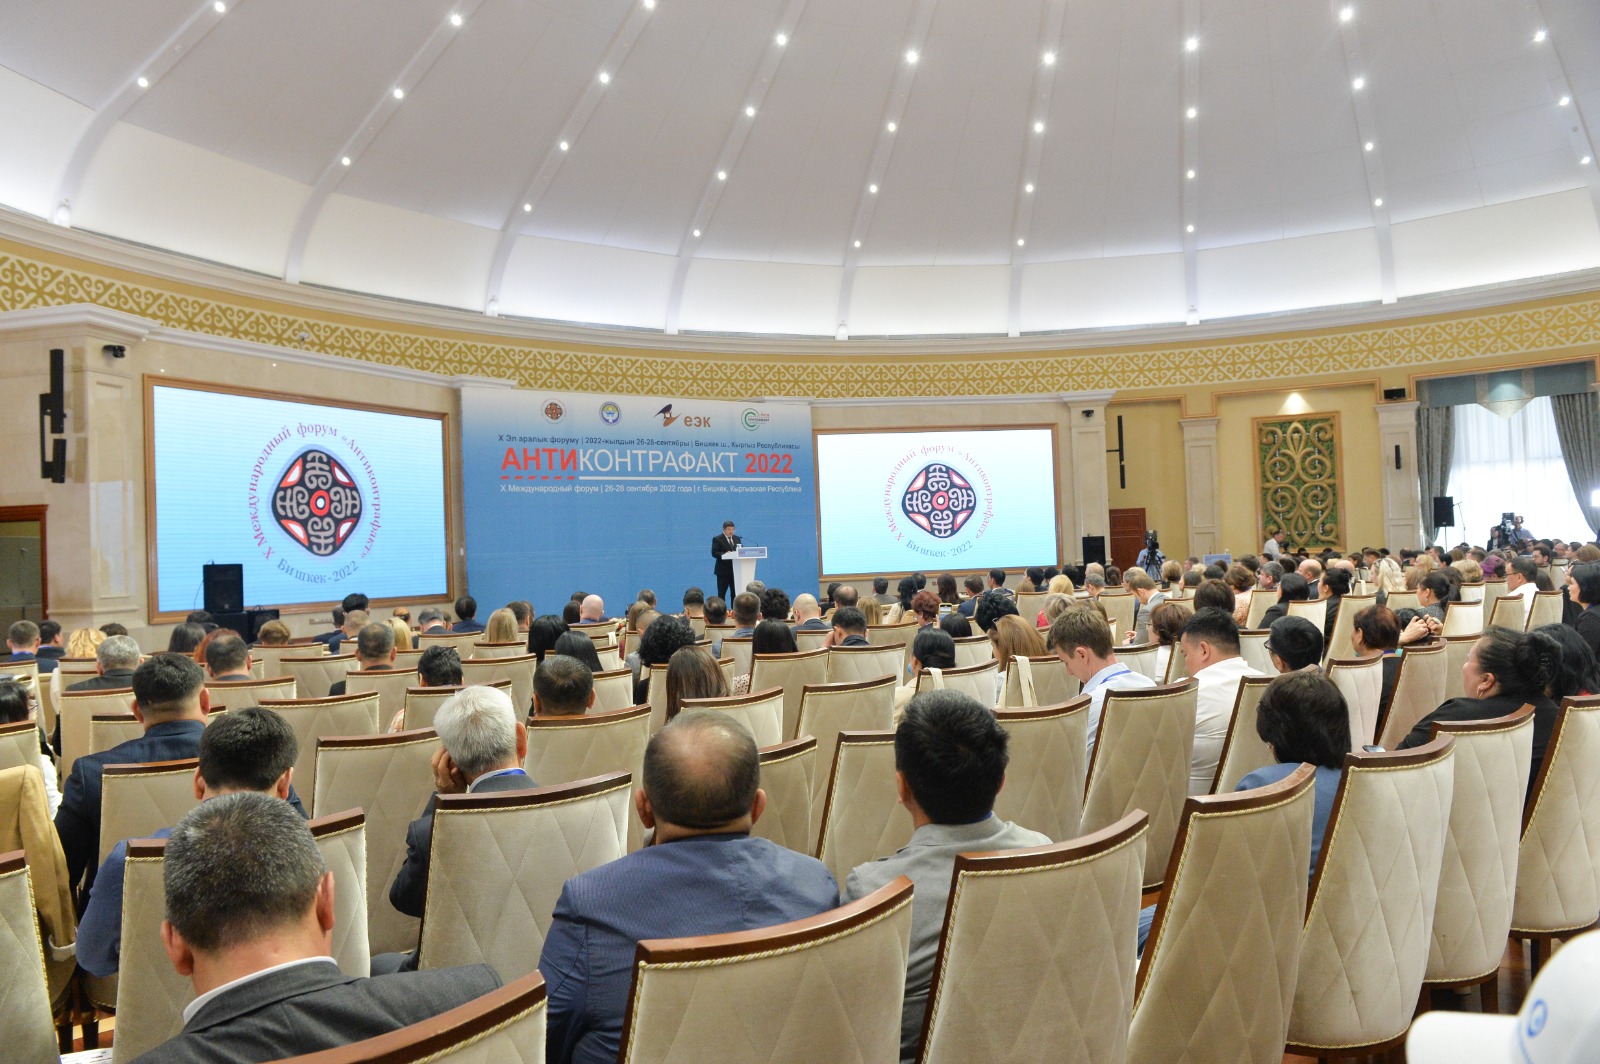 Международный форум «Антиконтрафакт 2022» прошел в Бишкеке в сентябре 2022 года